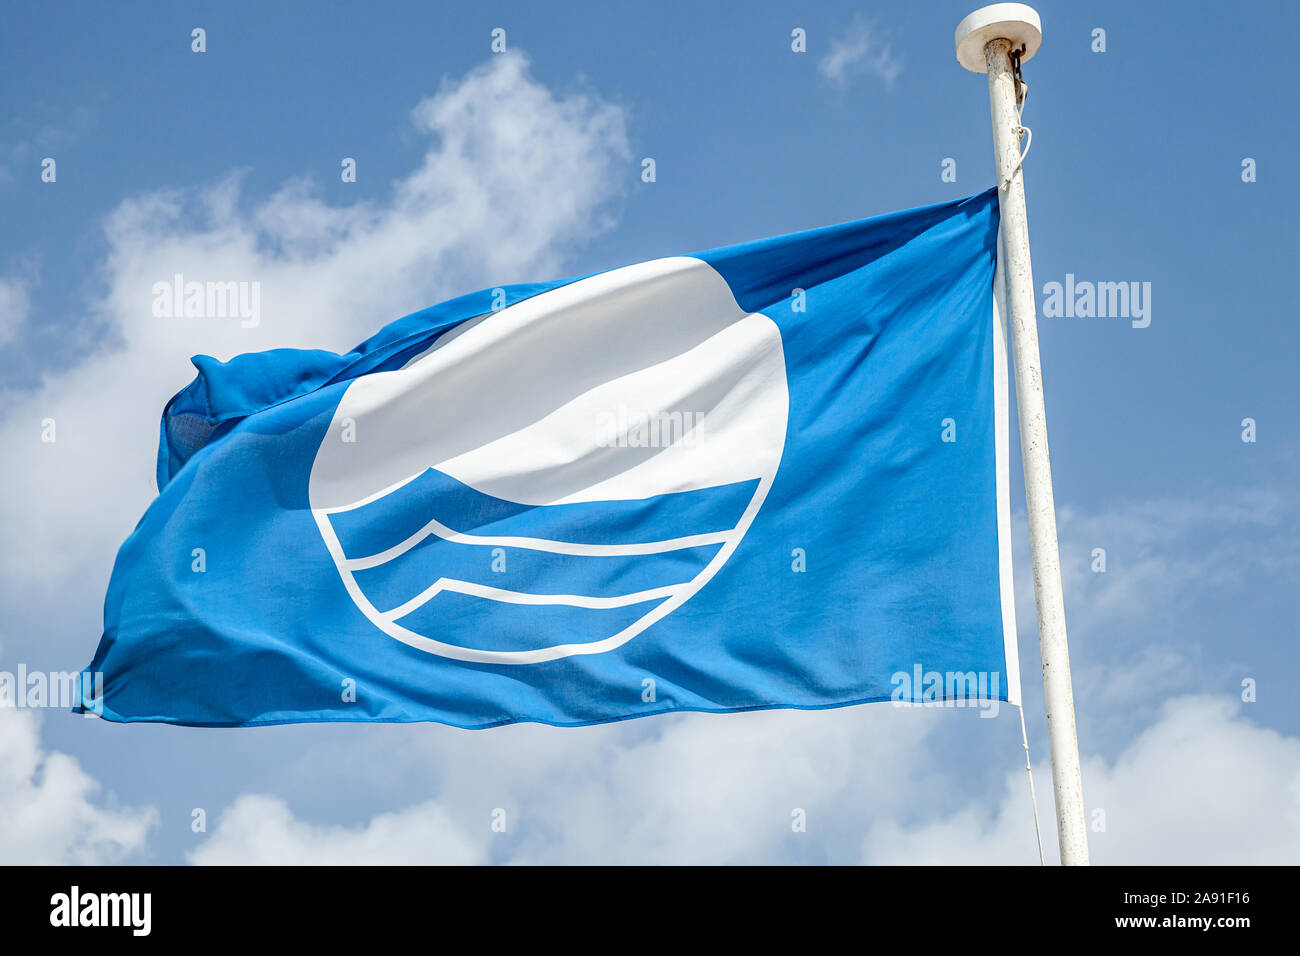 Spiaggia Bandiera Blu. Close-up foto di una bandiera sventola sotto il blu cielo molto nuvoloso Foto Stock